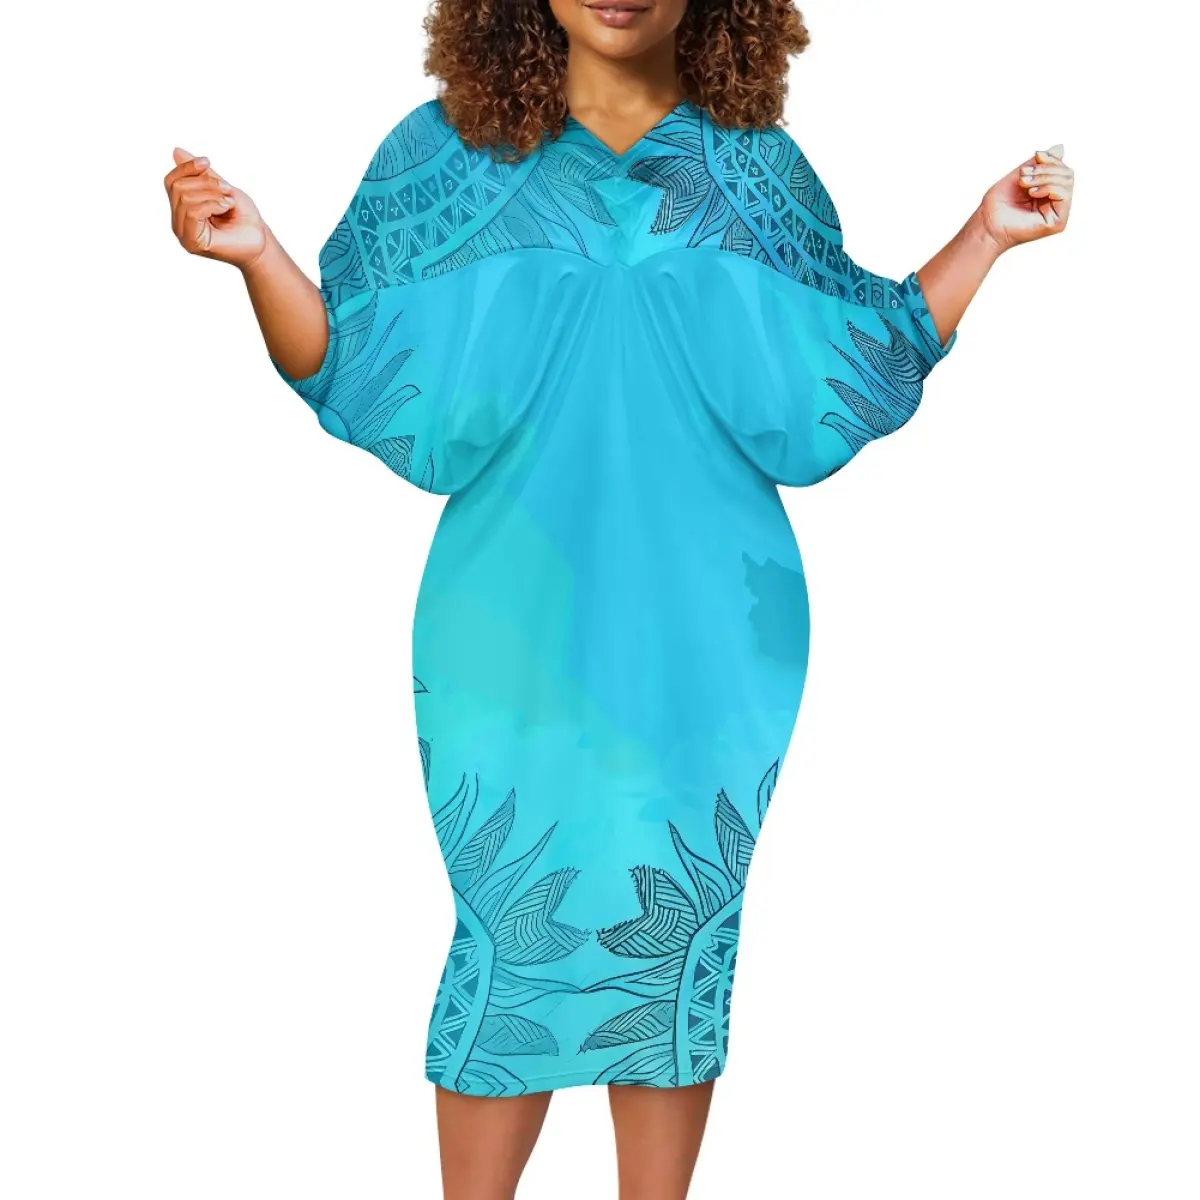 विशेष अवसरों के लिए कस्टम बैट स्लीव बड़े आकार की महिलाओं की पोशाकें सुरुचिपूर्ण समोआ जनजातीय प्रिंट ड्रेस प्लस साइज पुलेटासी हवाईयन ड्रेस